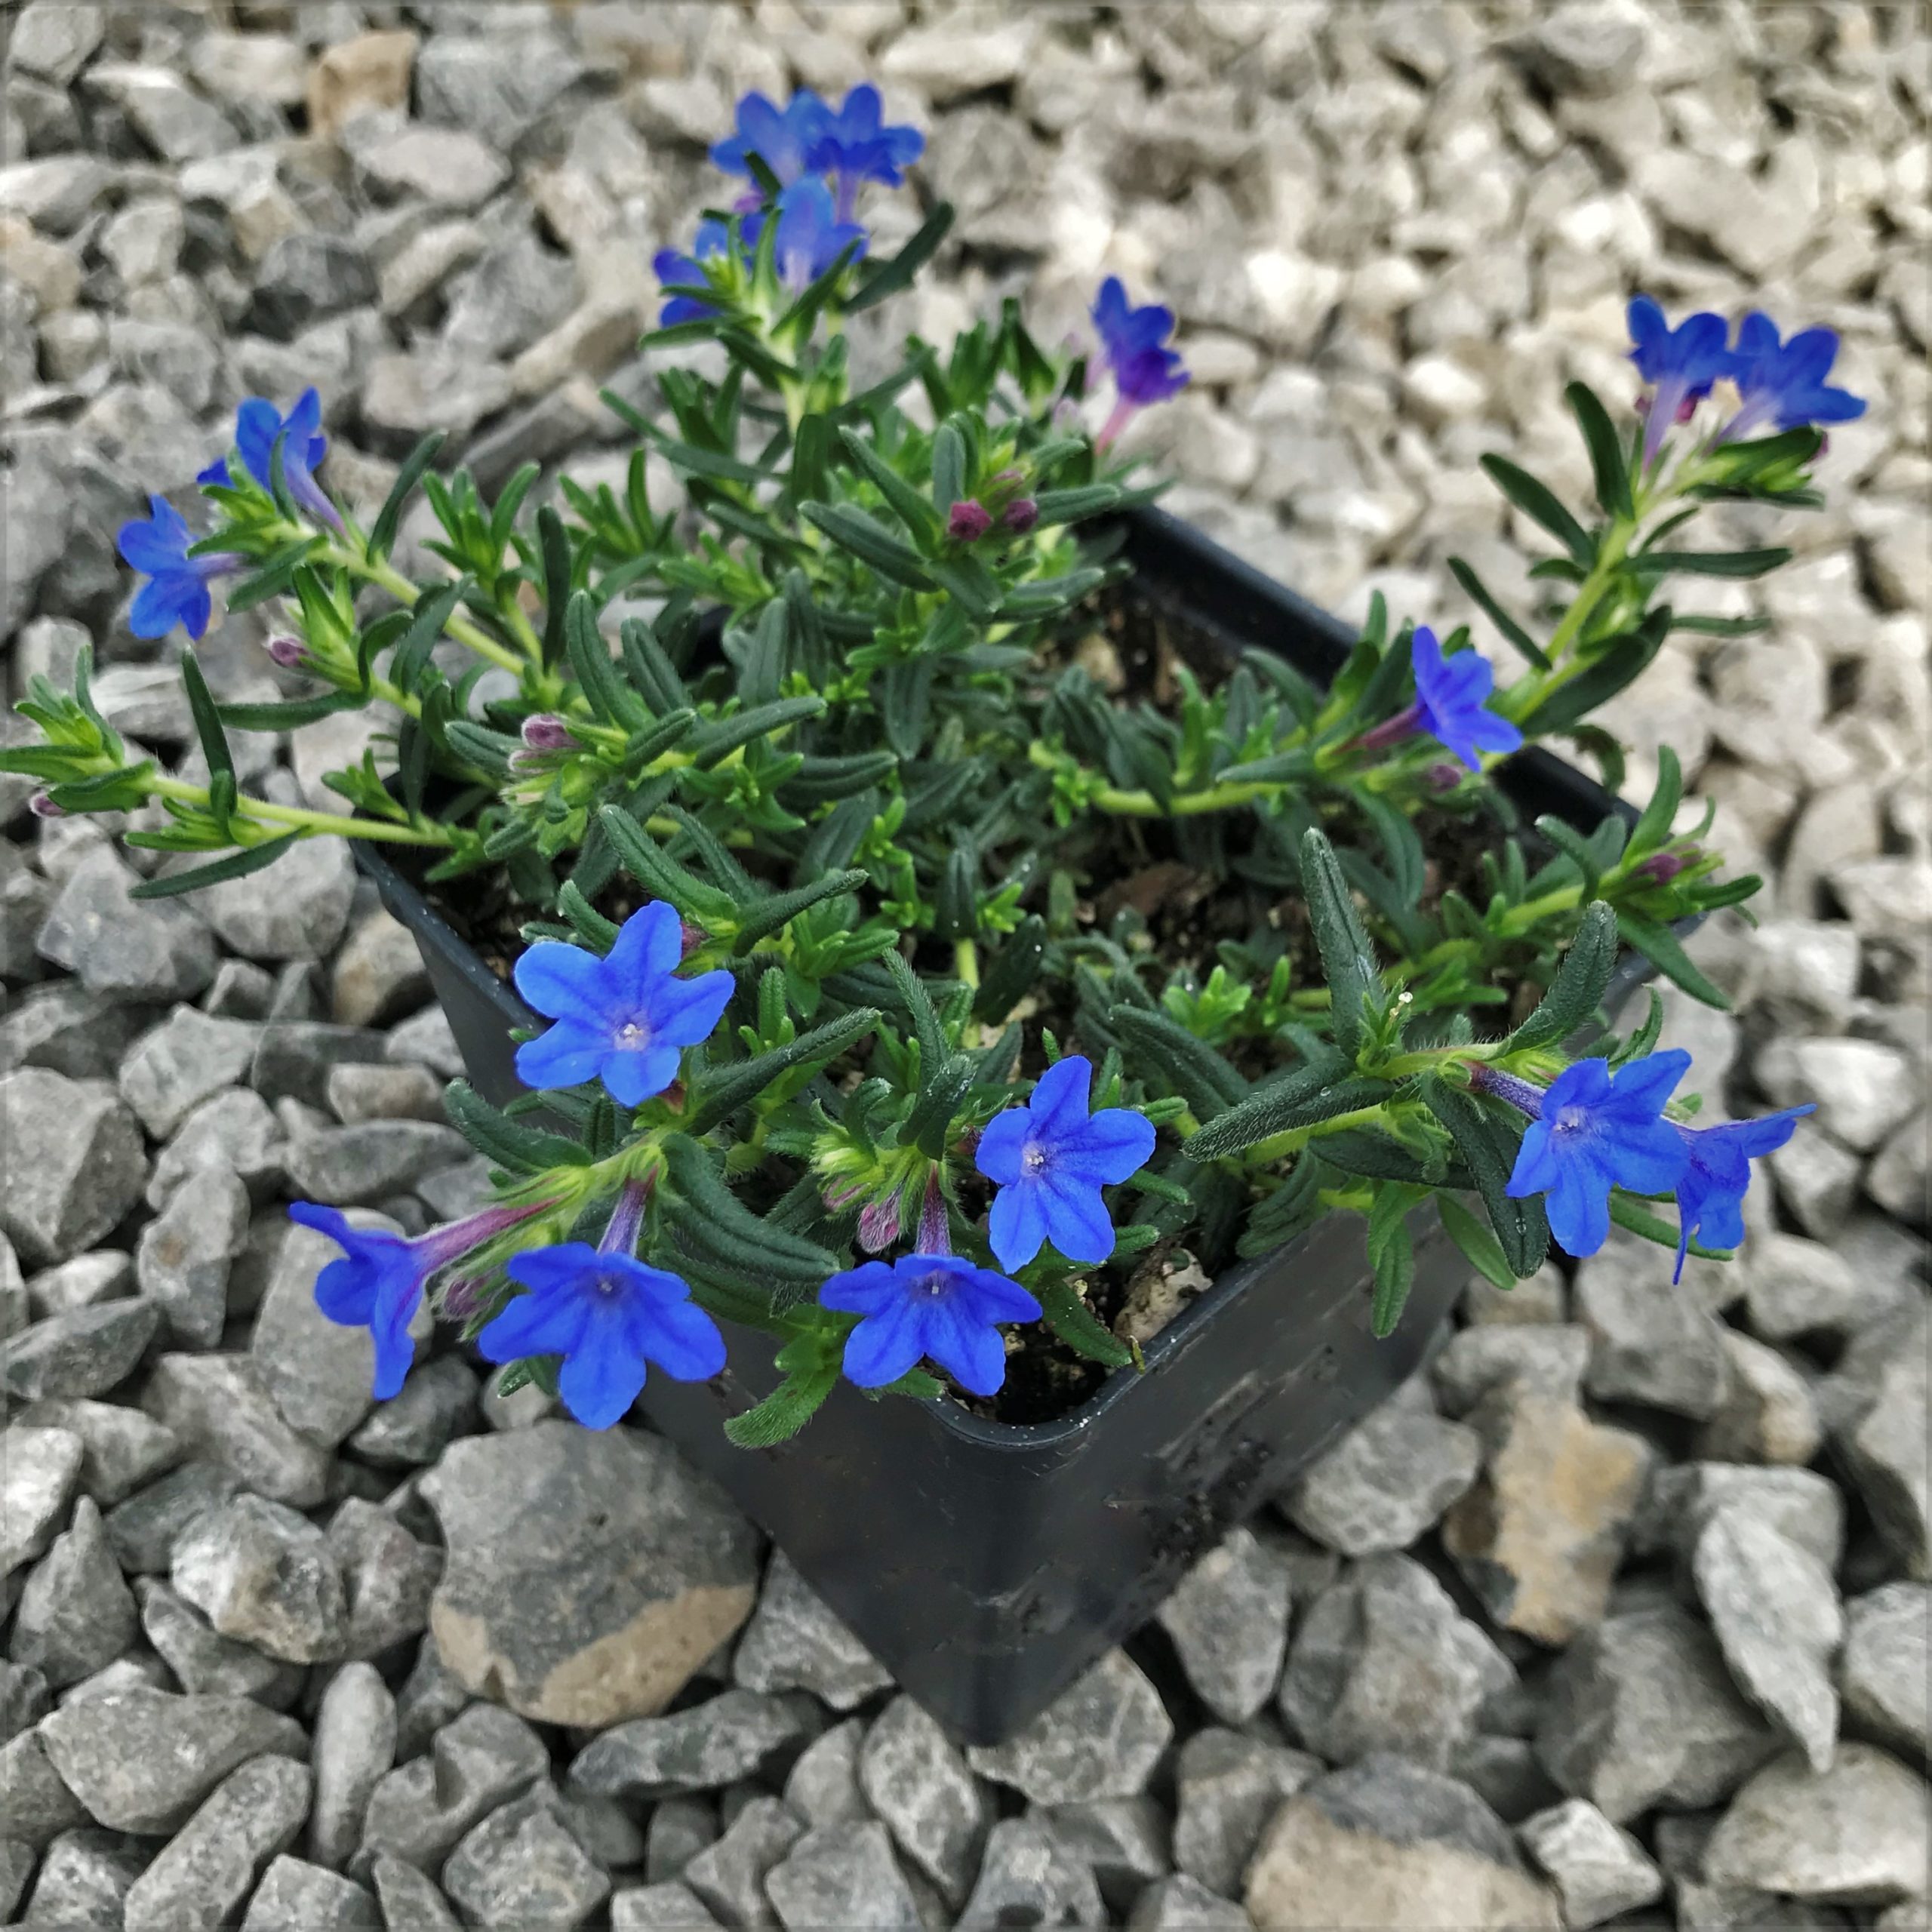 lithodora heavenly blue diffusa plants perennials pot